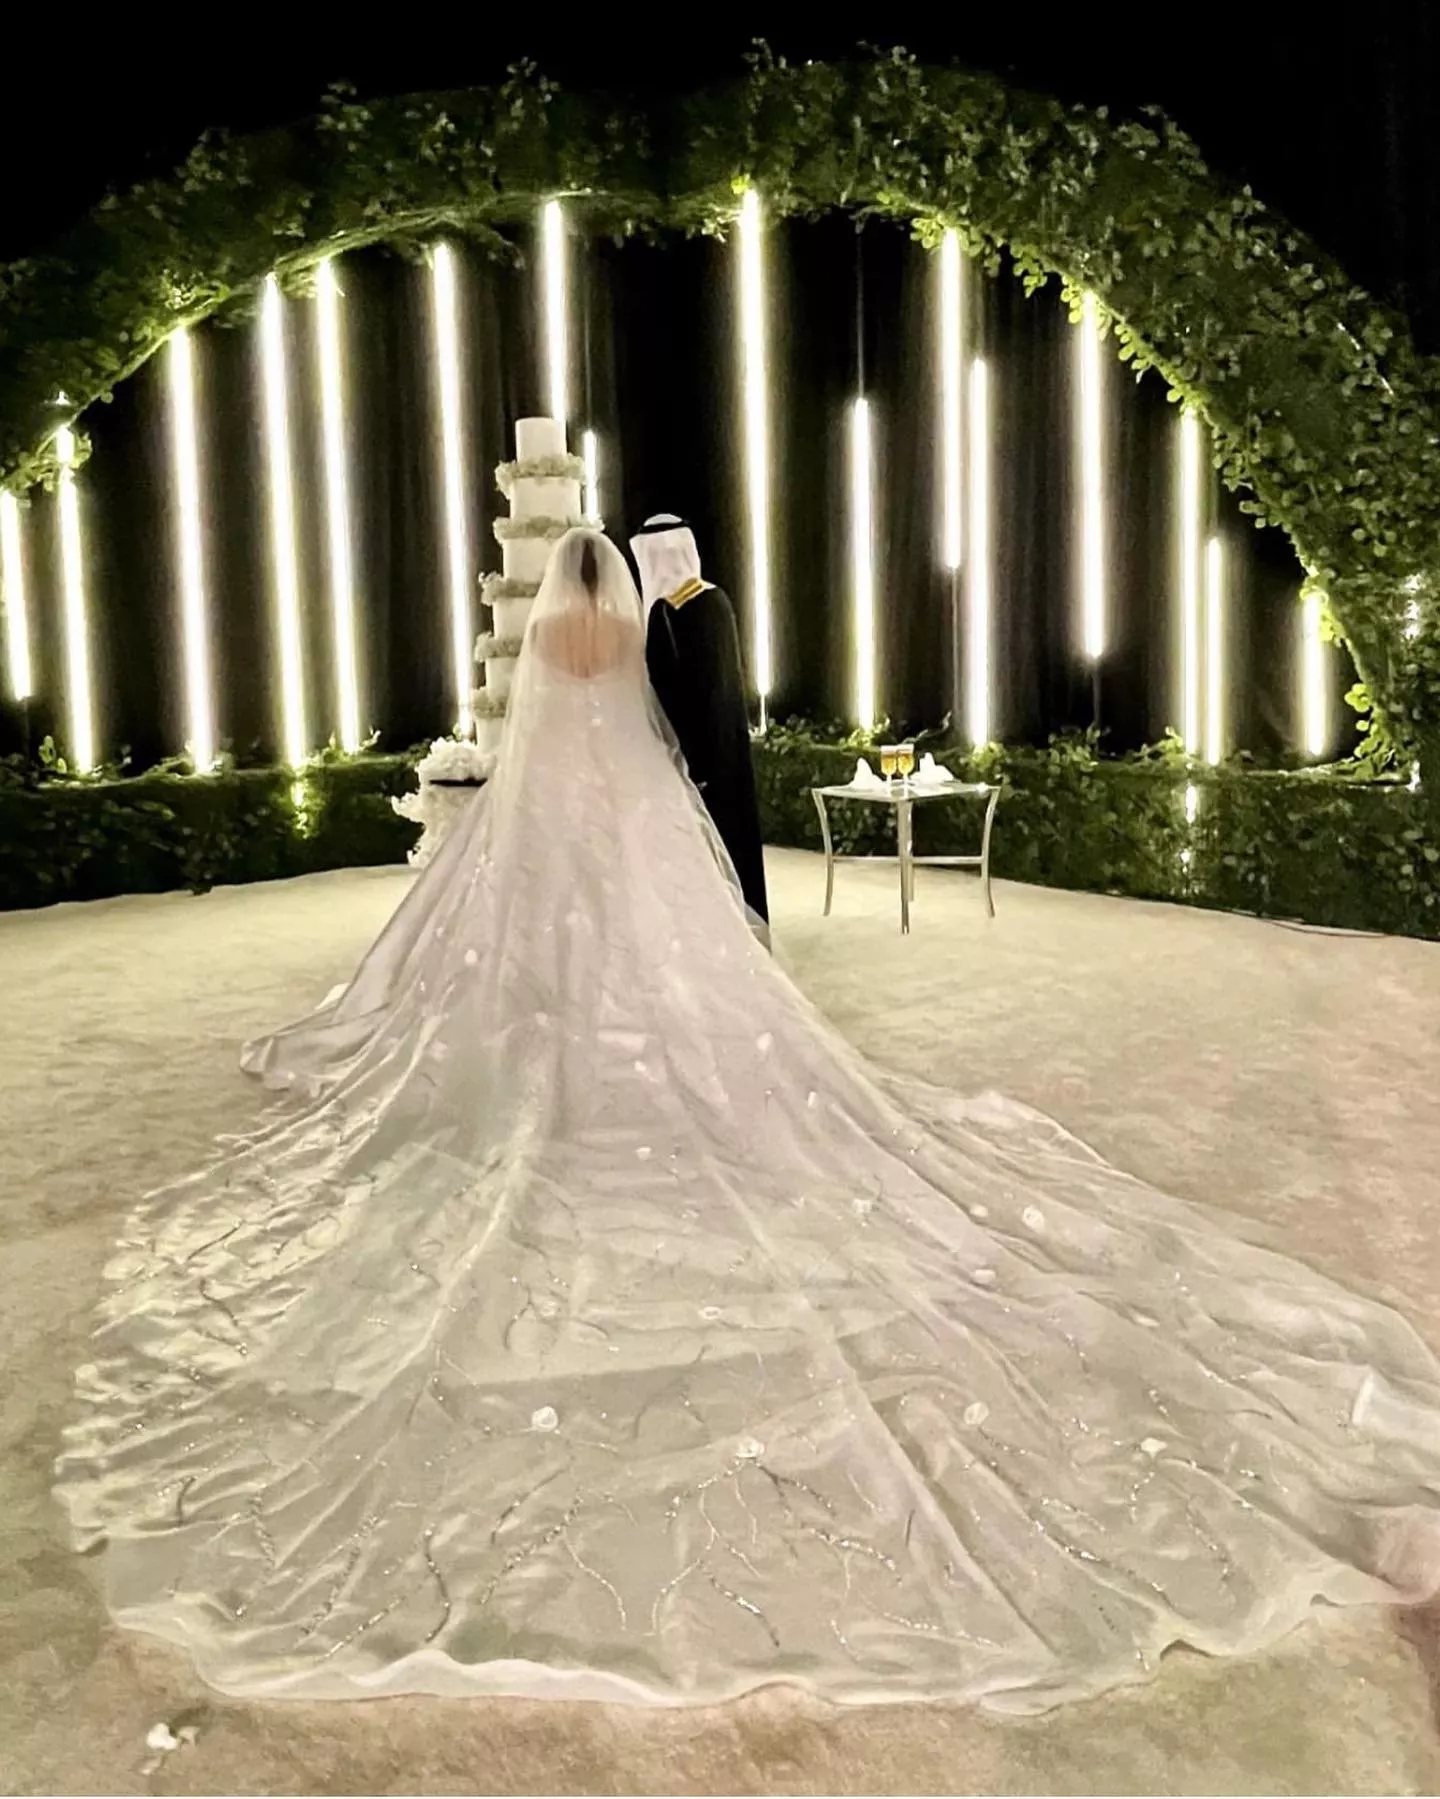 صور حفل زفاف دونا الحسين في الرياض: إطلالة فخمة وأنثوية